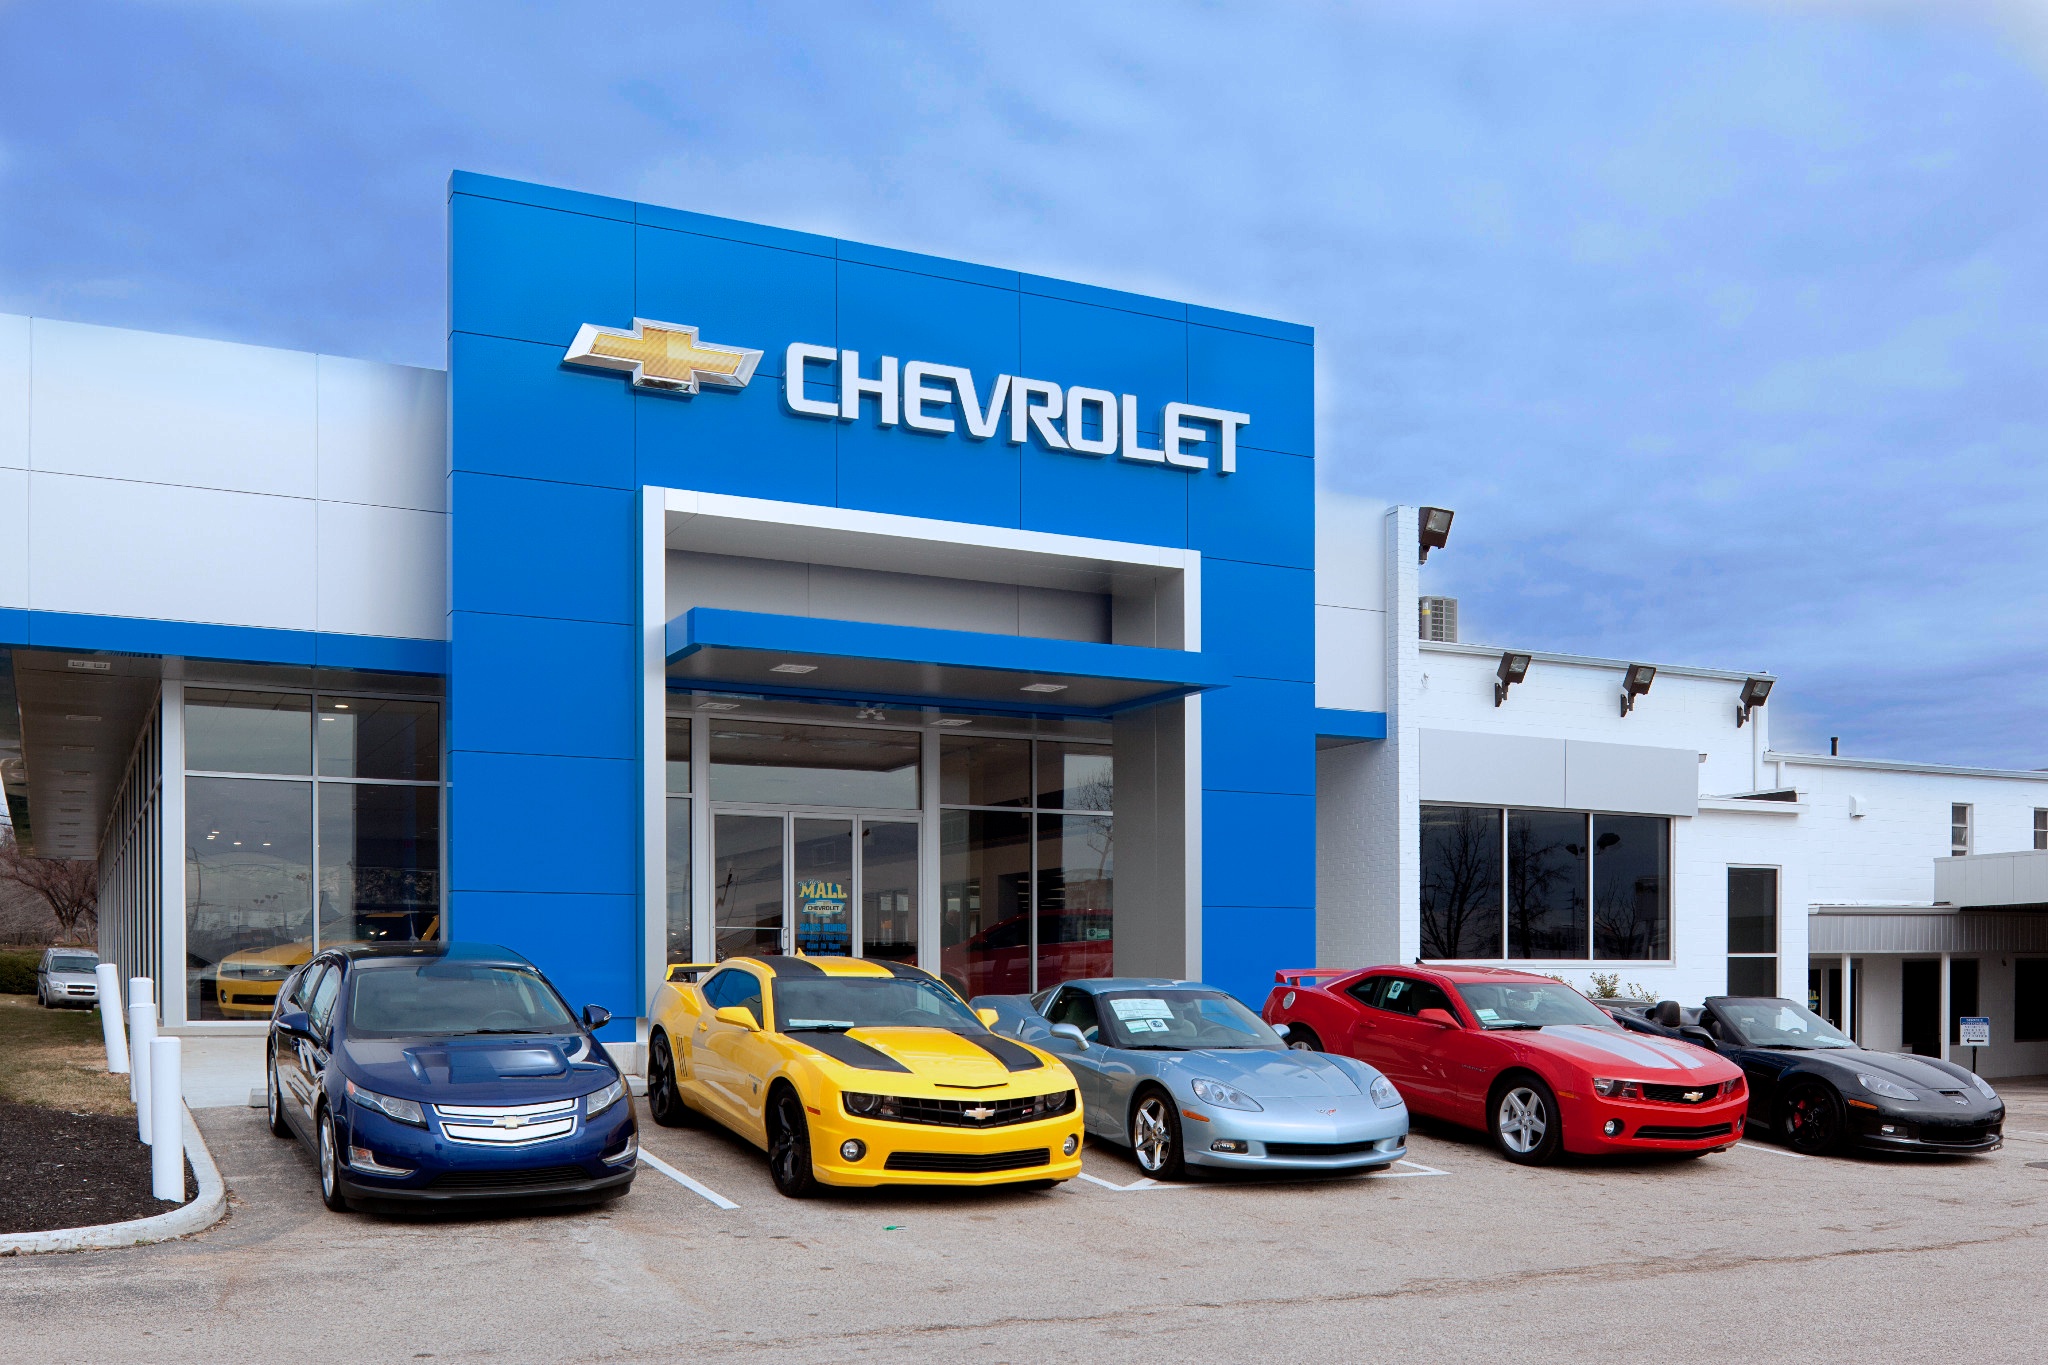 Mall Chevrolet Dealership Renovation | The Bannett Group